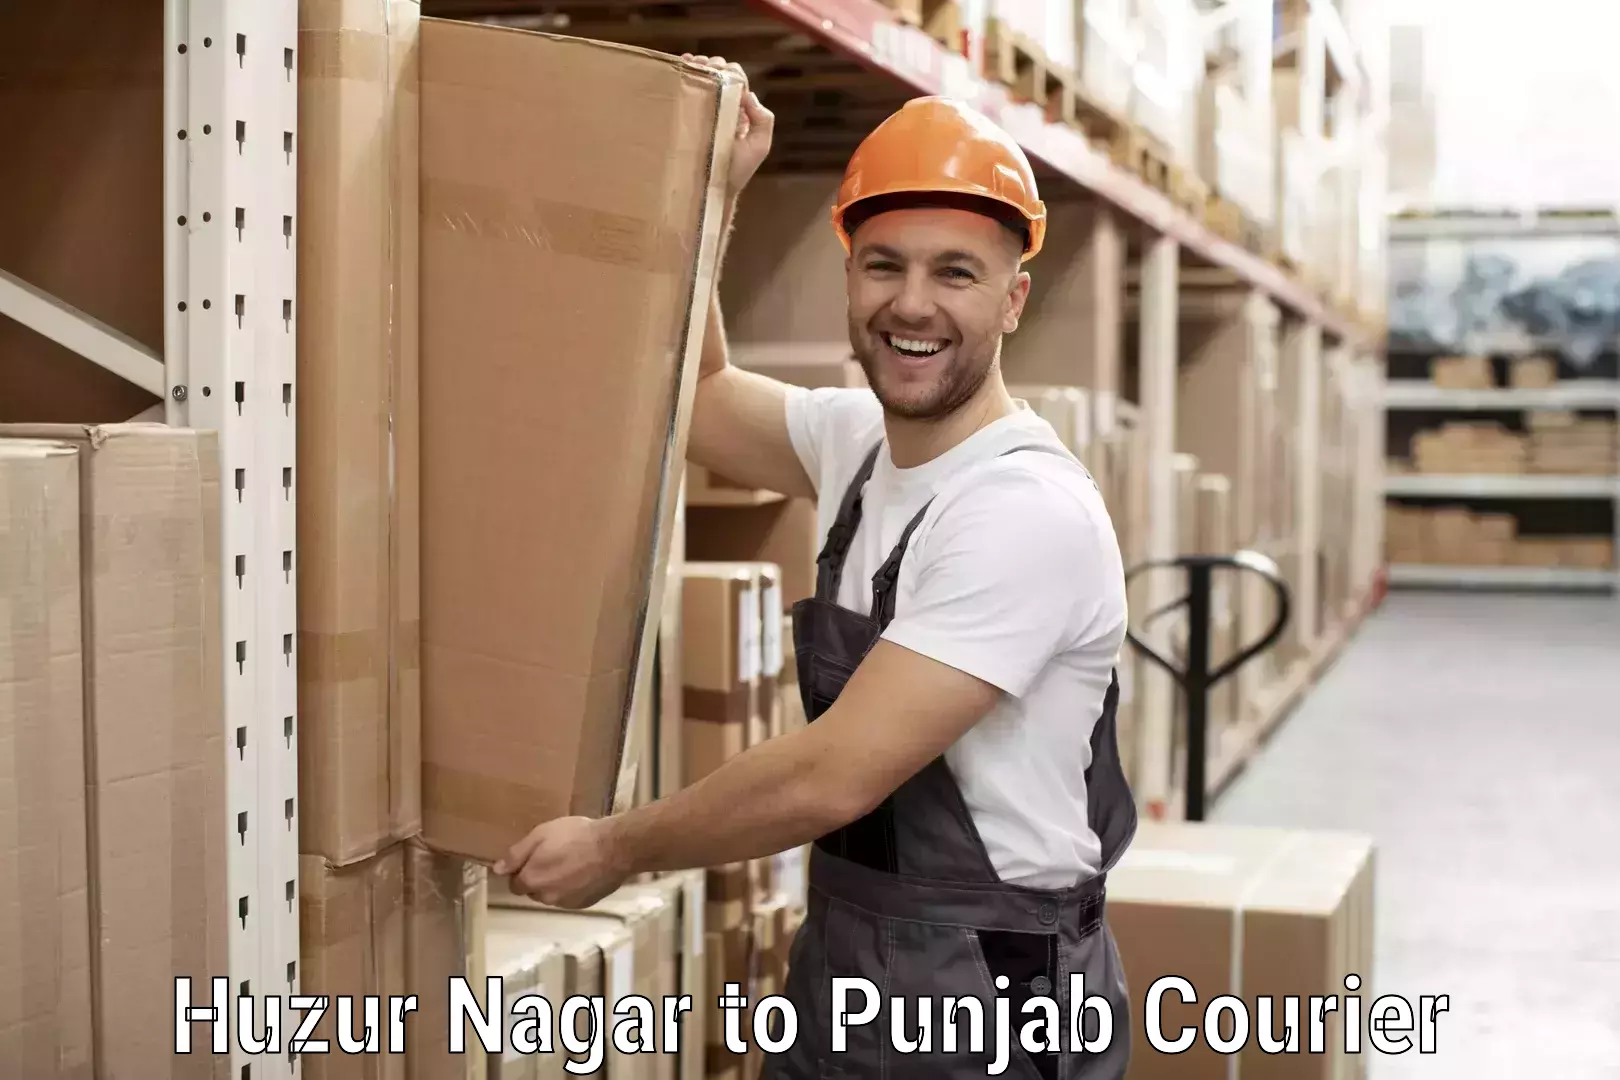 Next day courier Huzur Nagar to Punjab